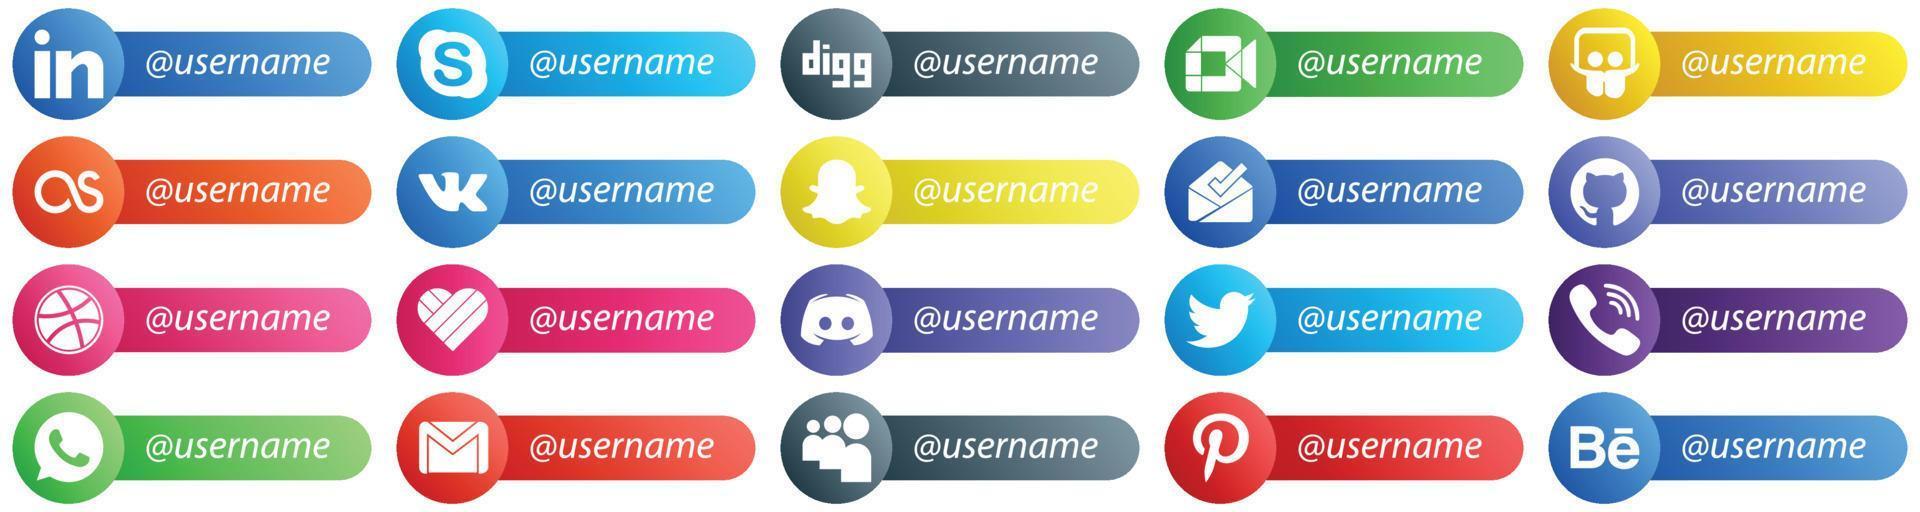 20 modernos iconos de estilo de tarjeta de plataforma de red social sígueme, como mensaje. me gusta compartir diapositivas. iconos de regate y bandeja de entrada. único y de alta definición vector